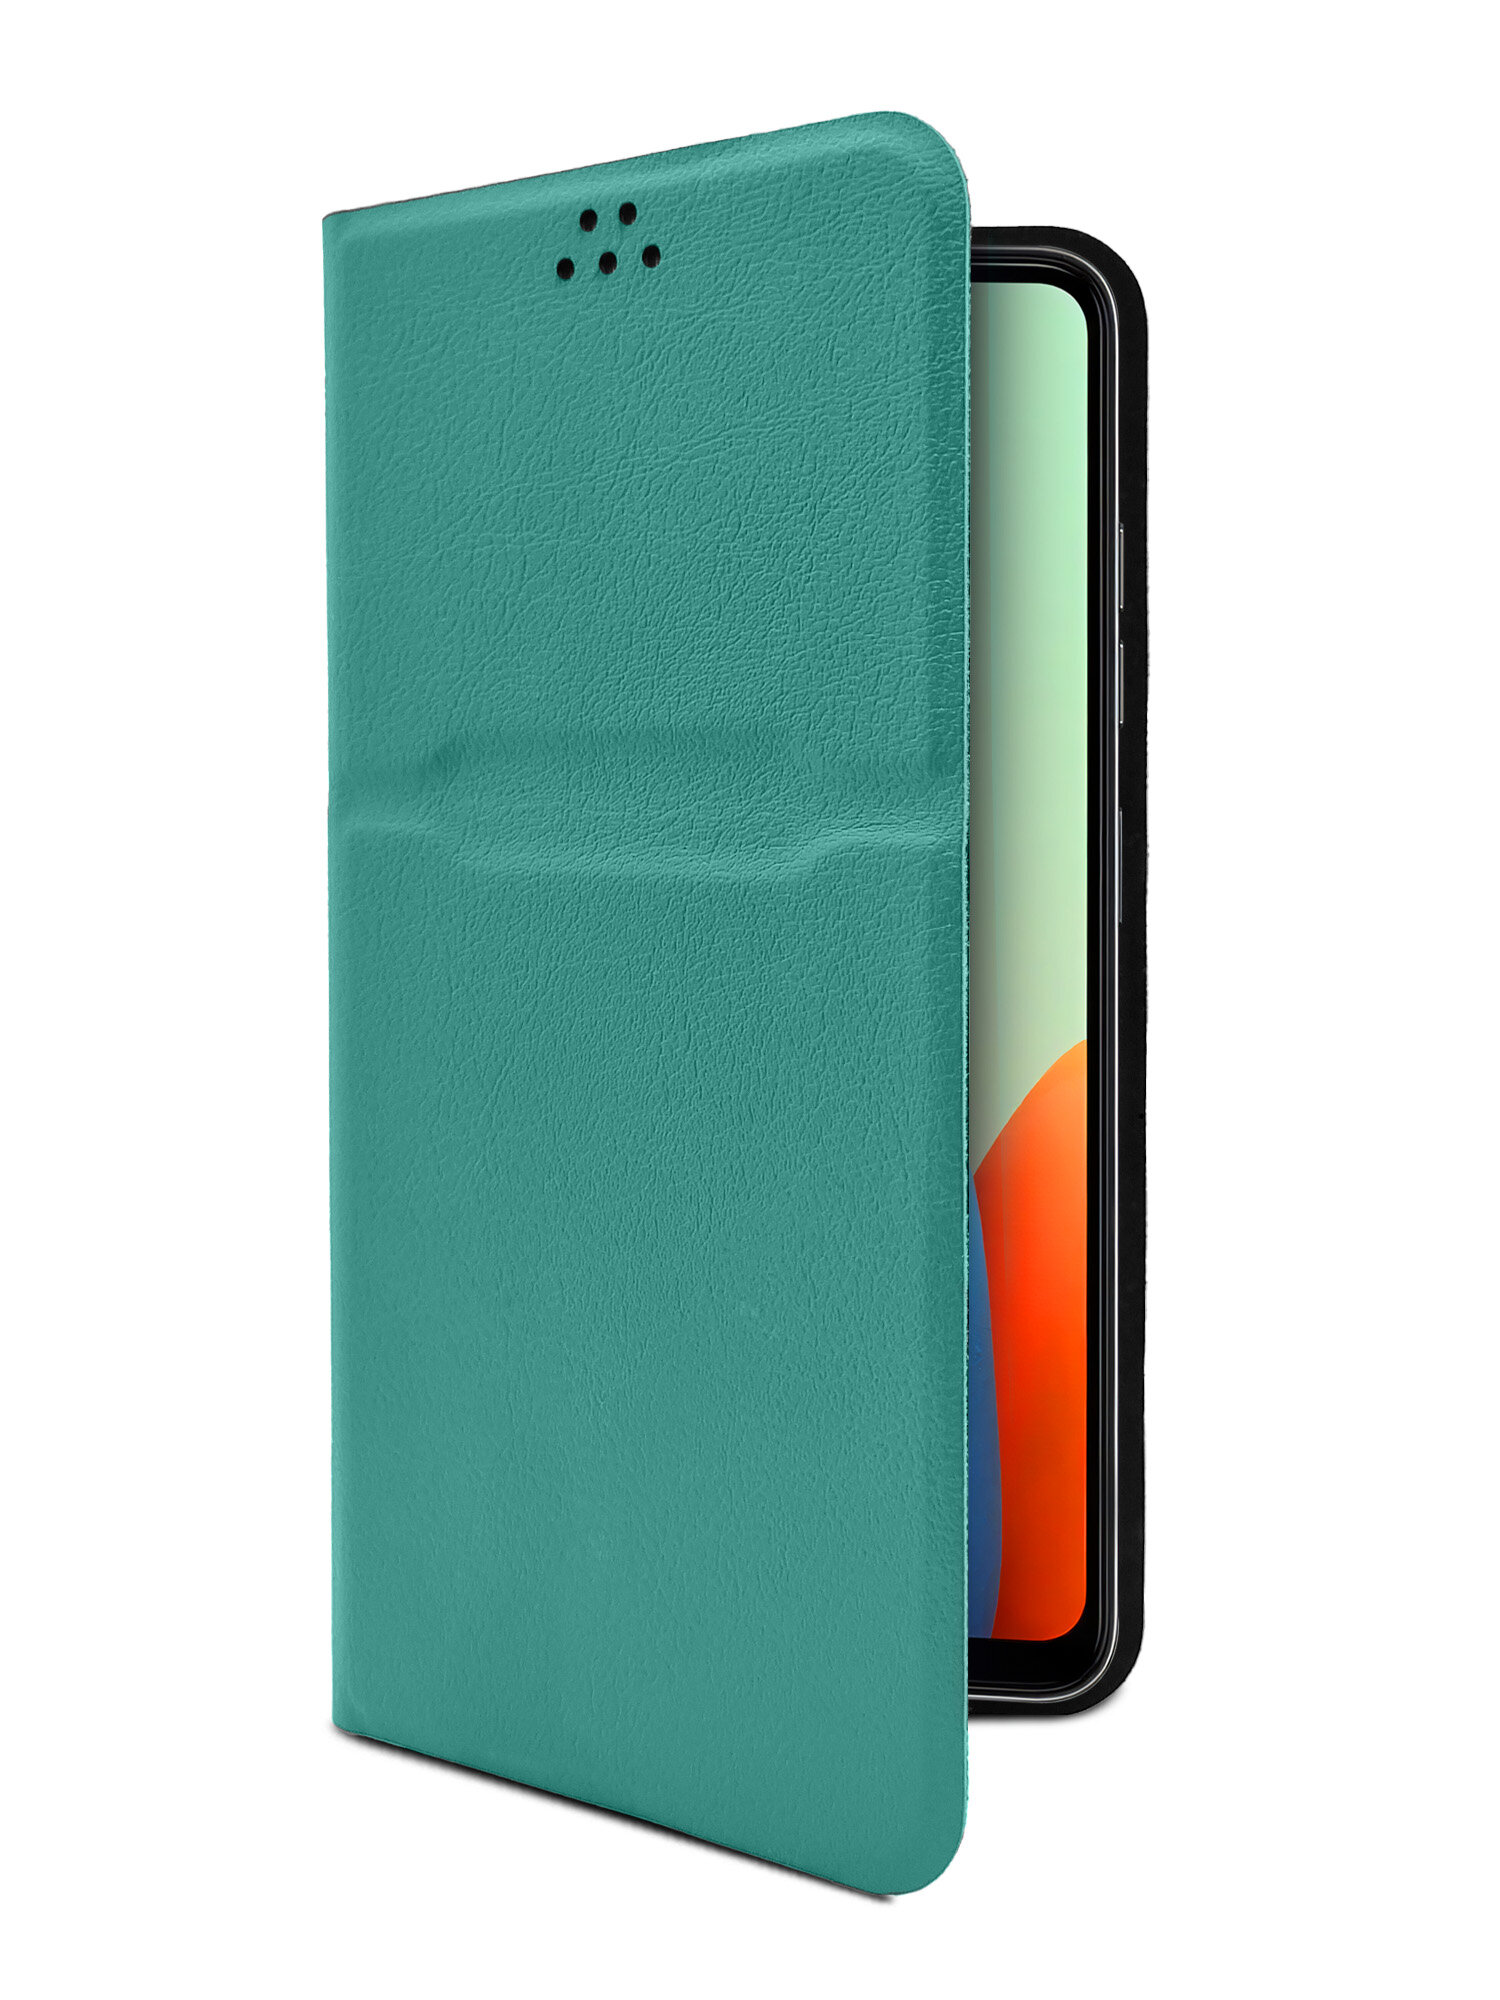 Универсальный чехол-книжка для смартфонов с размером до 16,5 см (Высота) * 7,9 см (Ширина) зеленый опал, Brozo